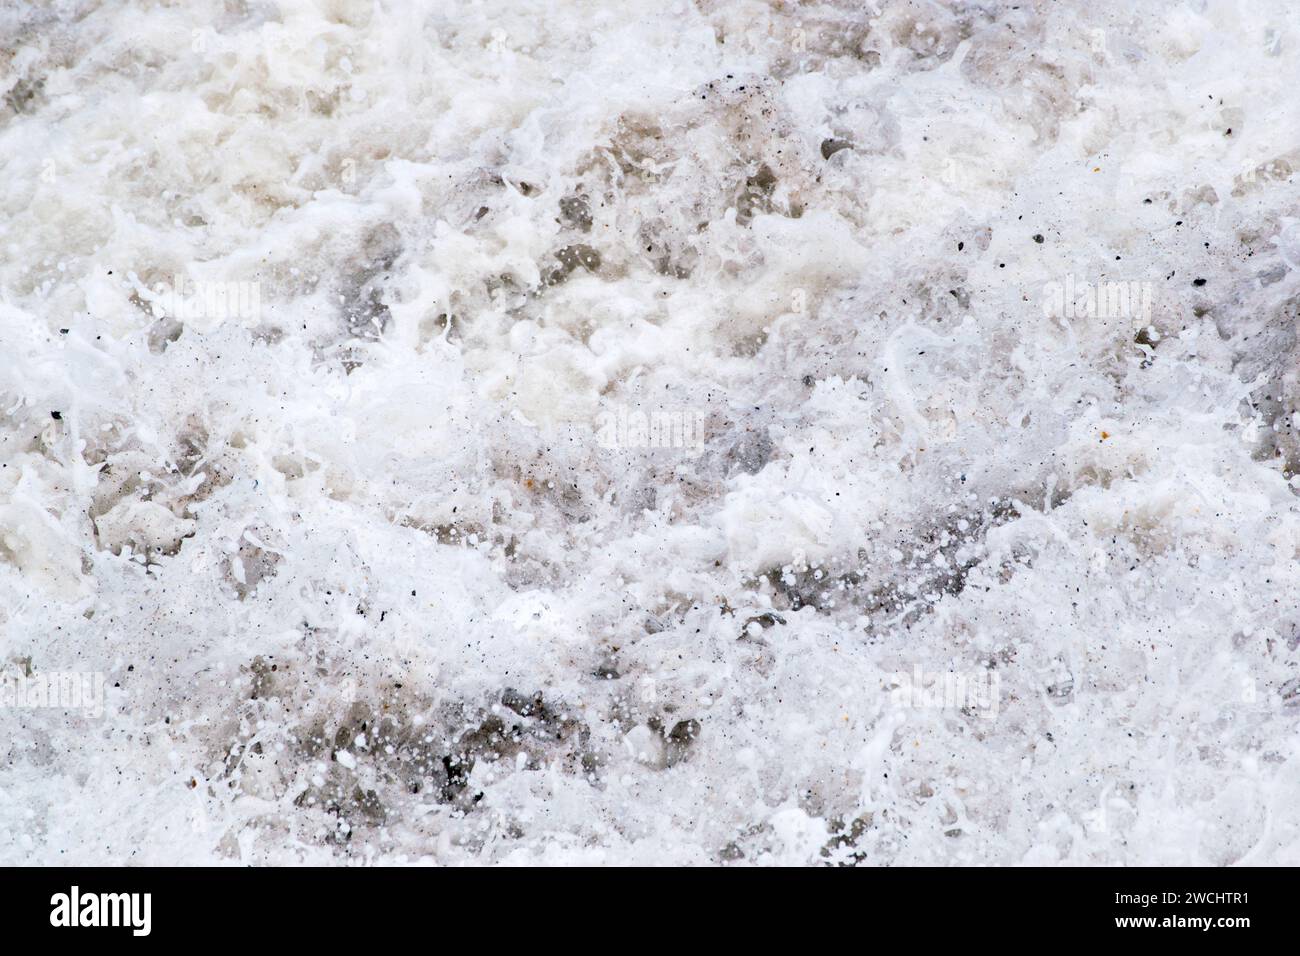 Eau de mer mousseuse, vagues atteignant le rivage, mousse de mer mélangée à des cailloux et du sable, un mouvement décrivant la photographie, presque audio, aussi. Banque D'Images